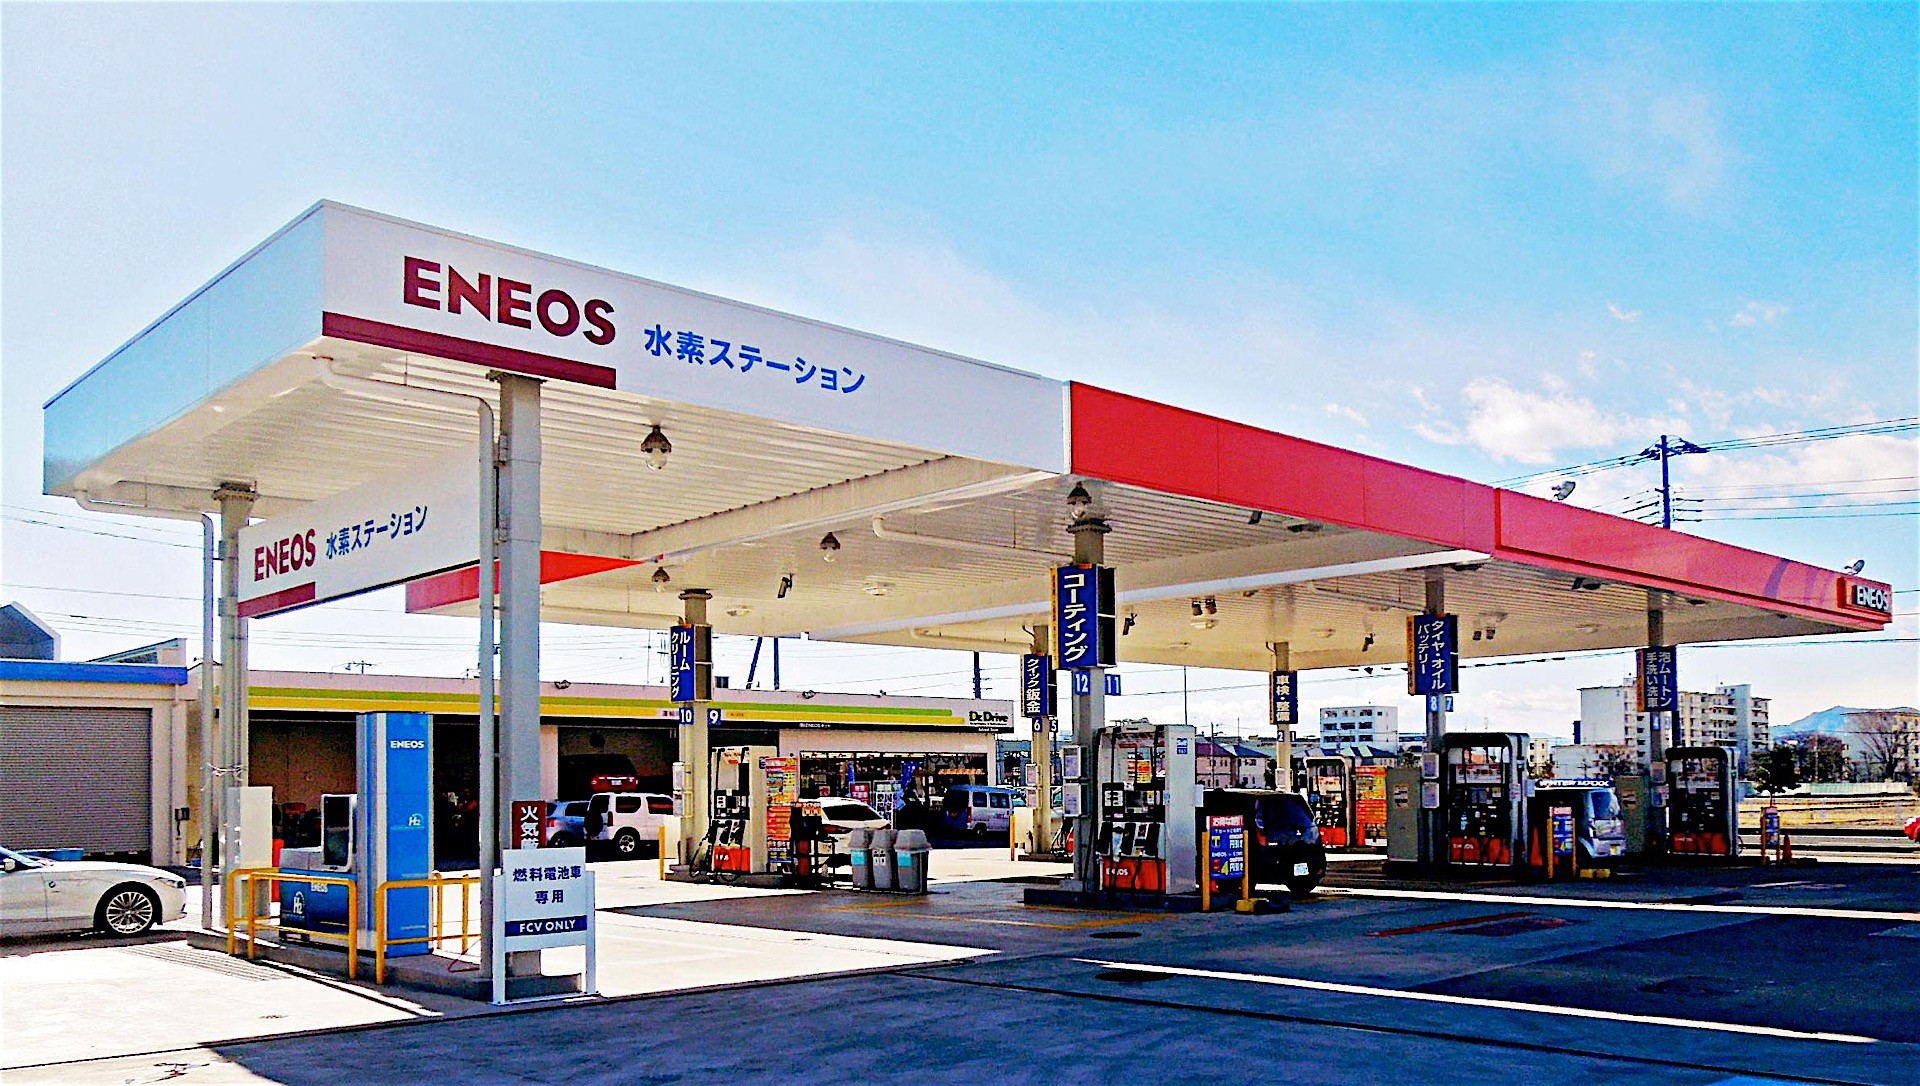 International, spbu hidrogen jepang eneos: Jepang Olah Air Selokan Jadi Bahan Bakar Hidrogen Siap Jual